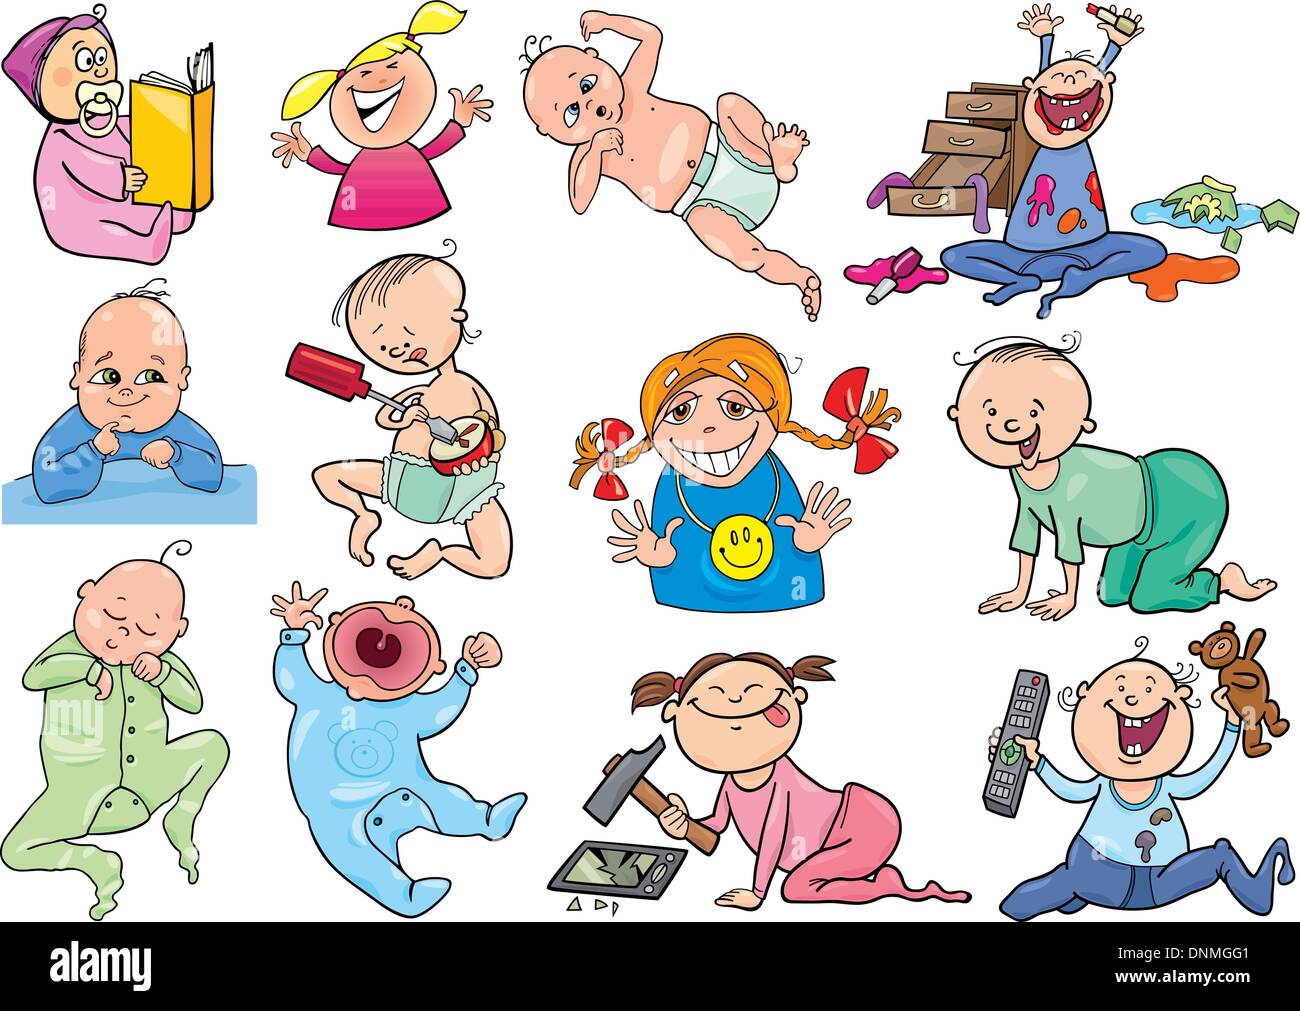 Ilustración de dibujos animados de bebés y niños Imagen Vector de stock -  Alamy